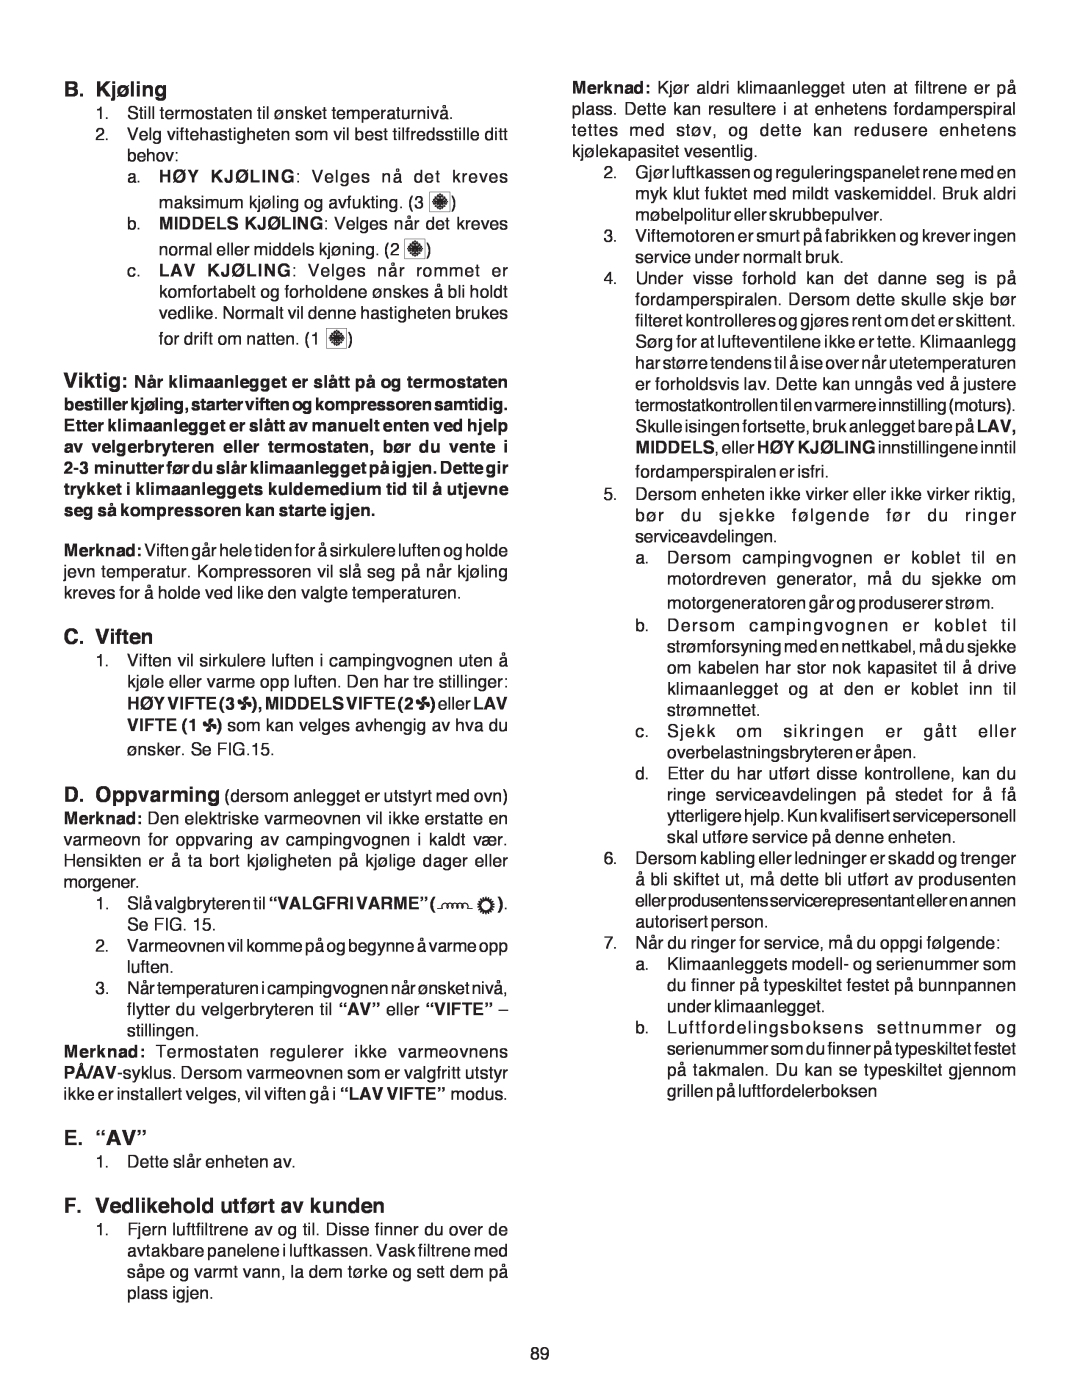 Dometic B3200 manual B.Kjøling, C.Viften, E.“Av”, F.Vedlikehold utført av kunden 